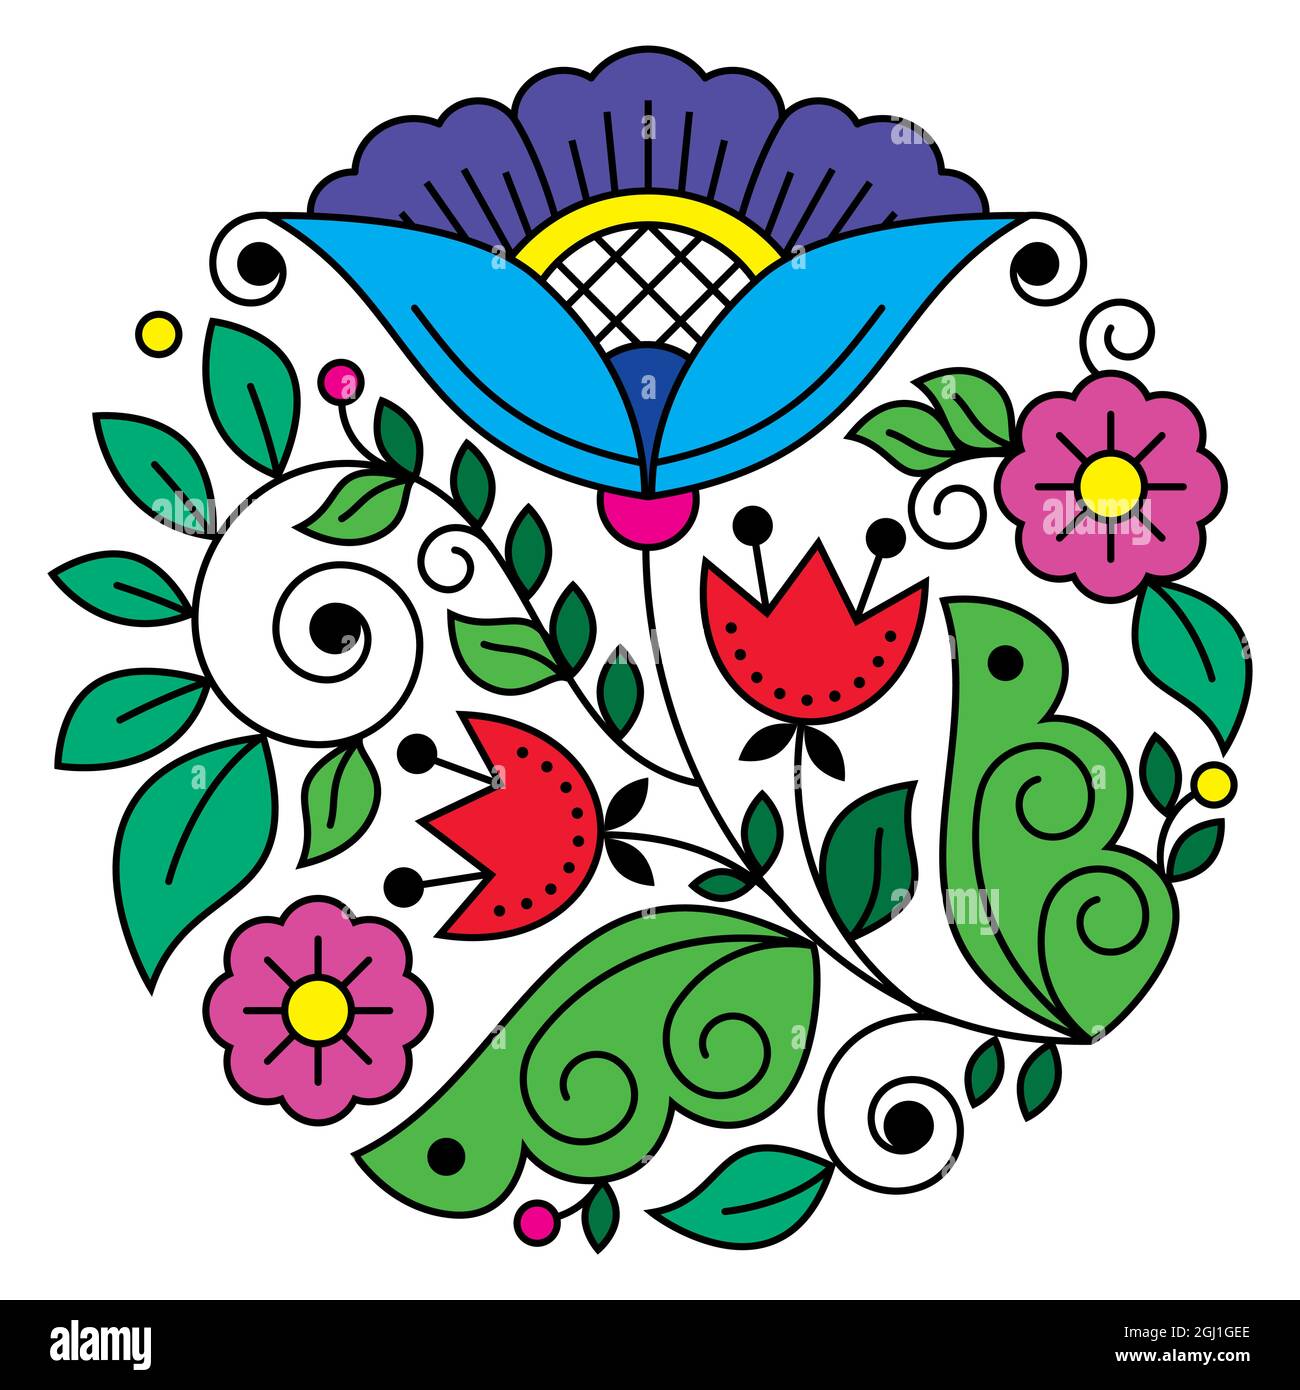 Skandinavische Volkskunst Blumen Vektor rundes Design Muster, Retro floral Design im Kreis inspiriert von der traditionellen Stickerei aus Schweden Stock Vektor